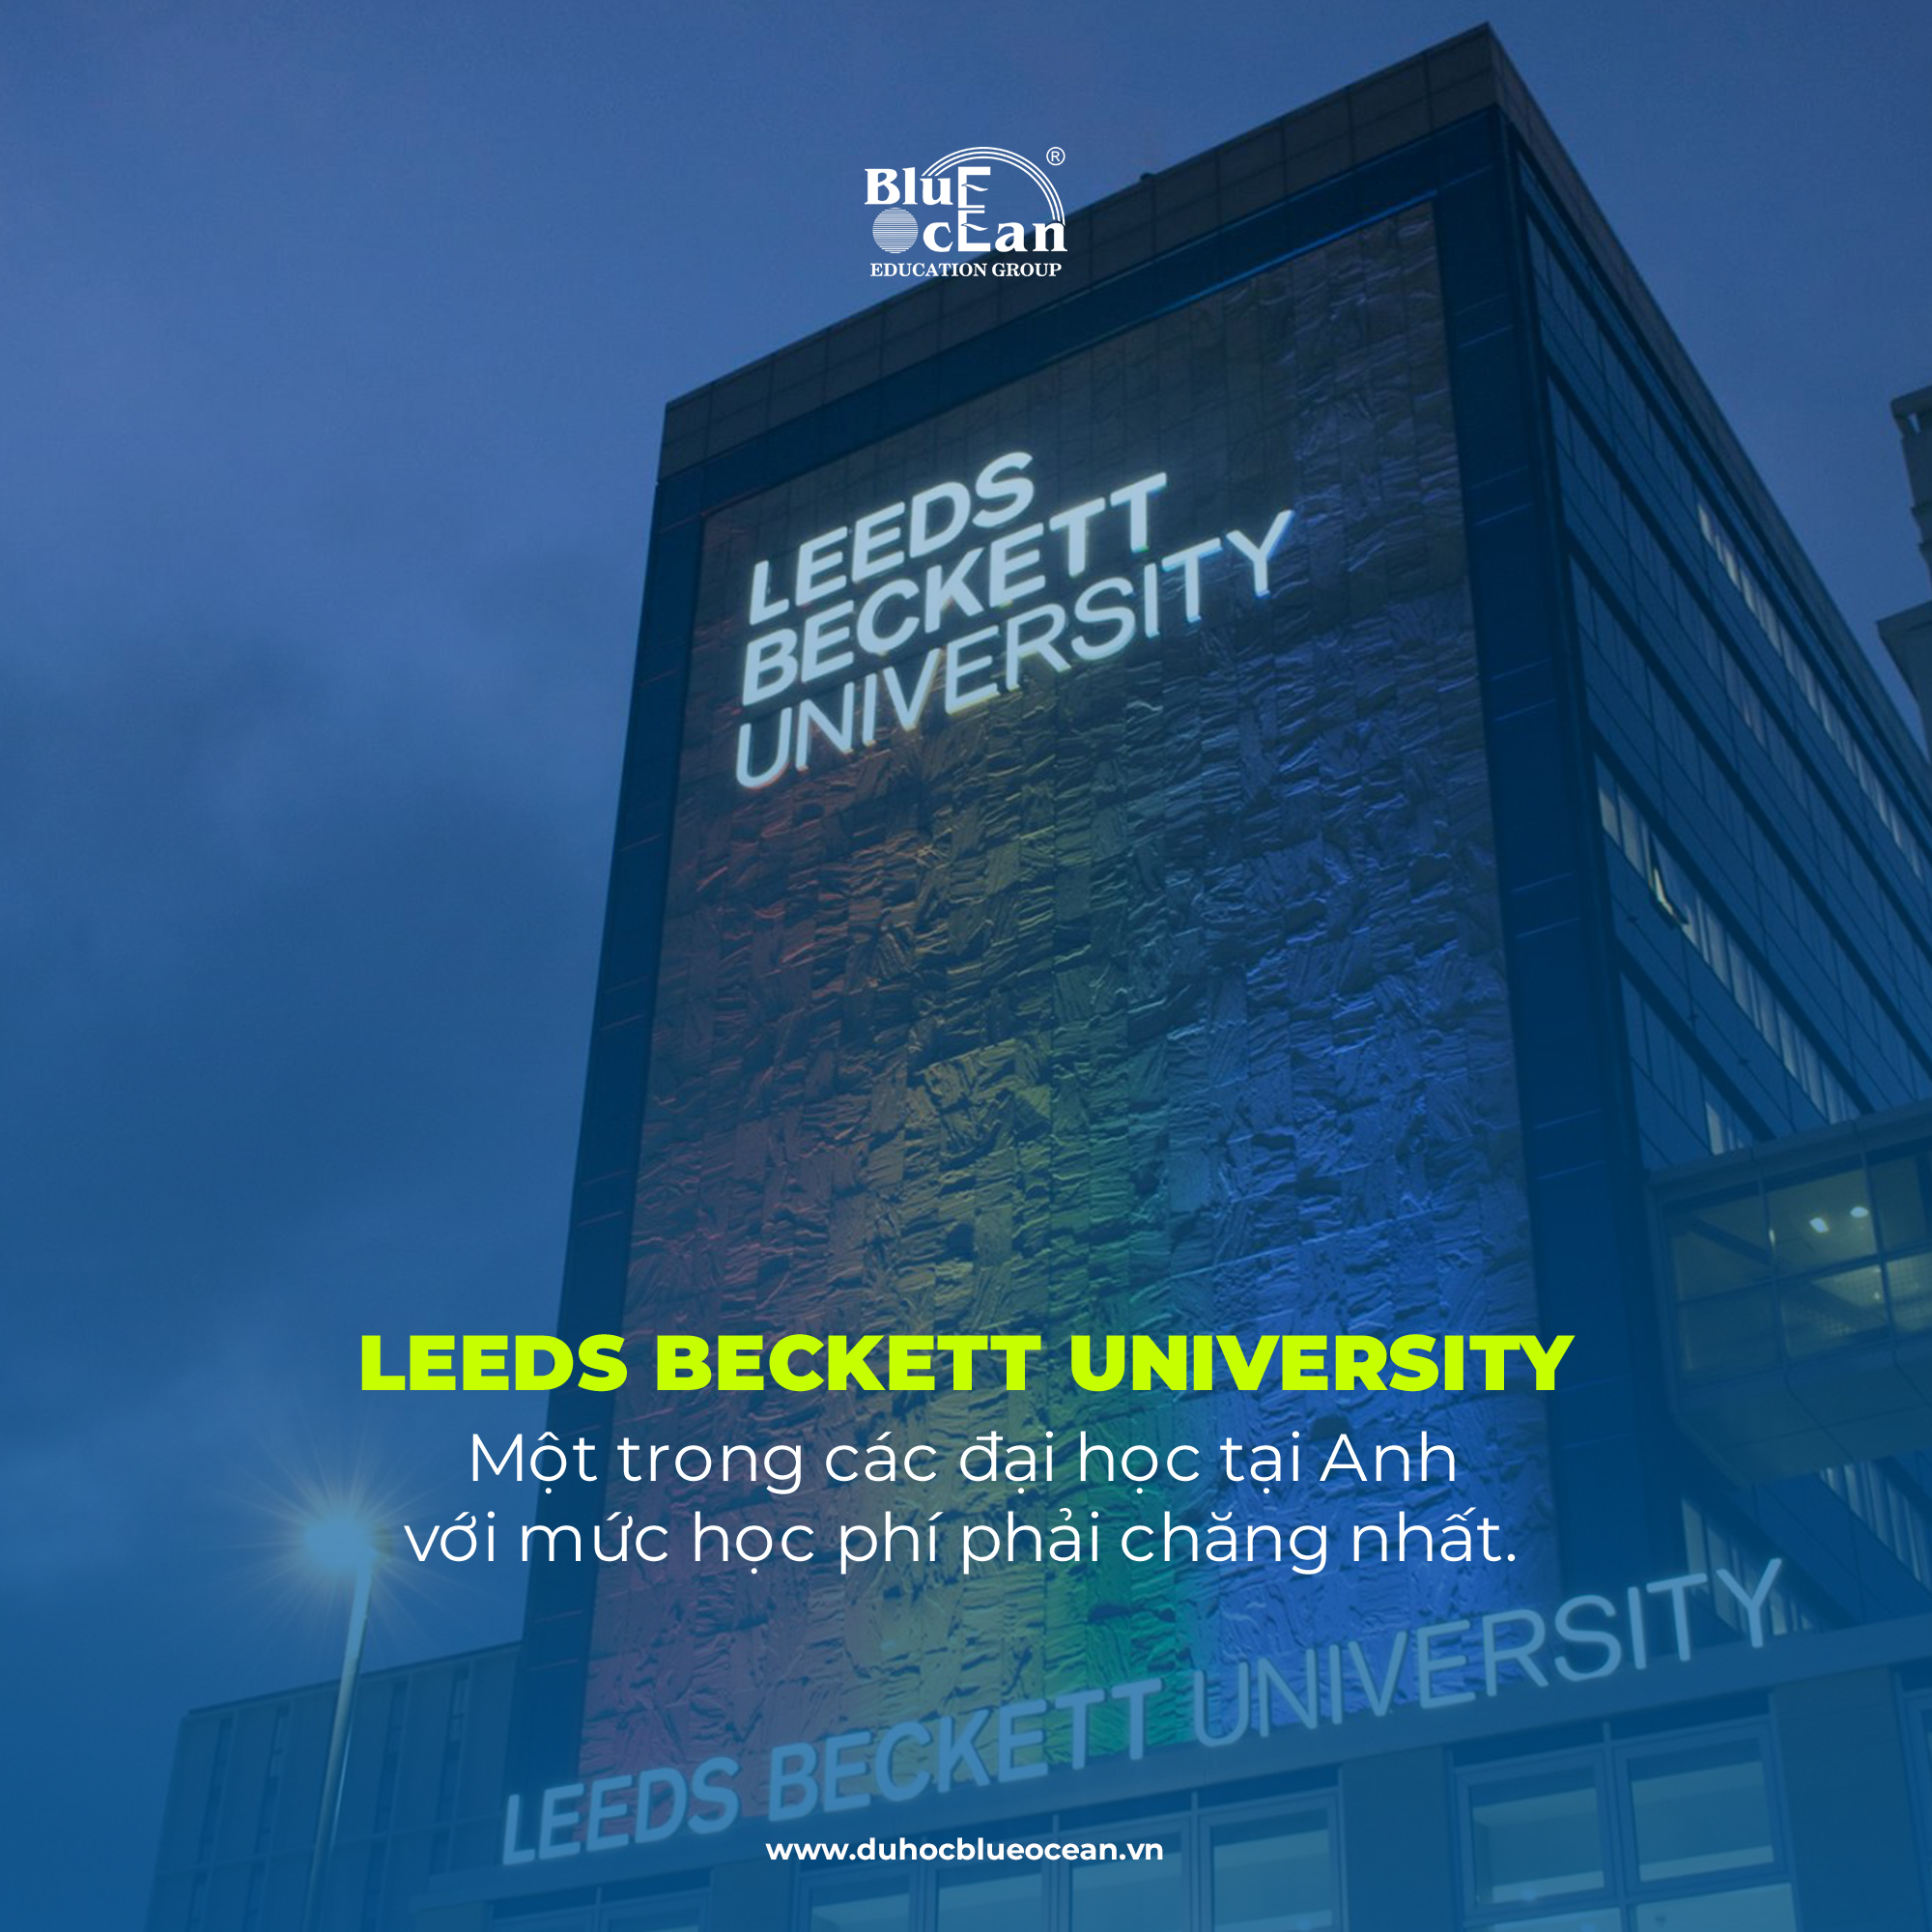 Leeds Beckett University - Một trong các đại học tại Anh với mức học phí phải chăng nhất